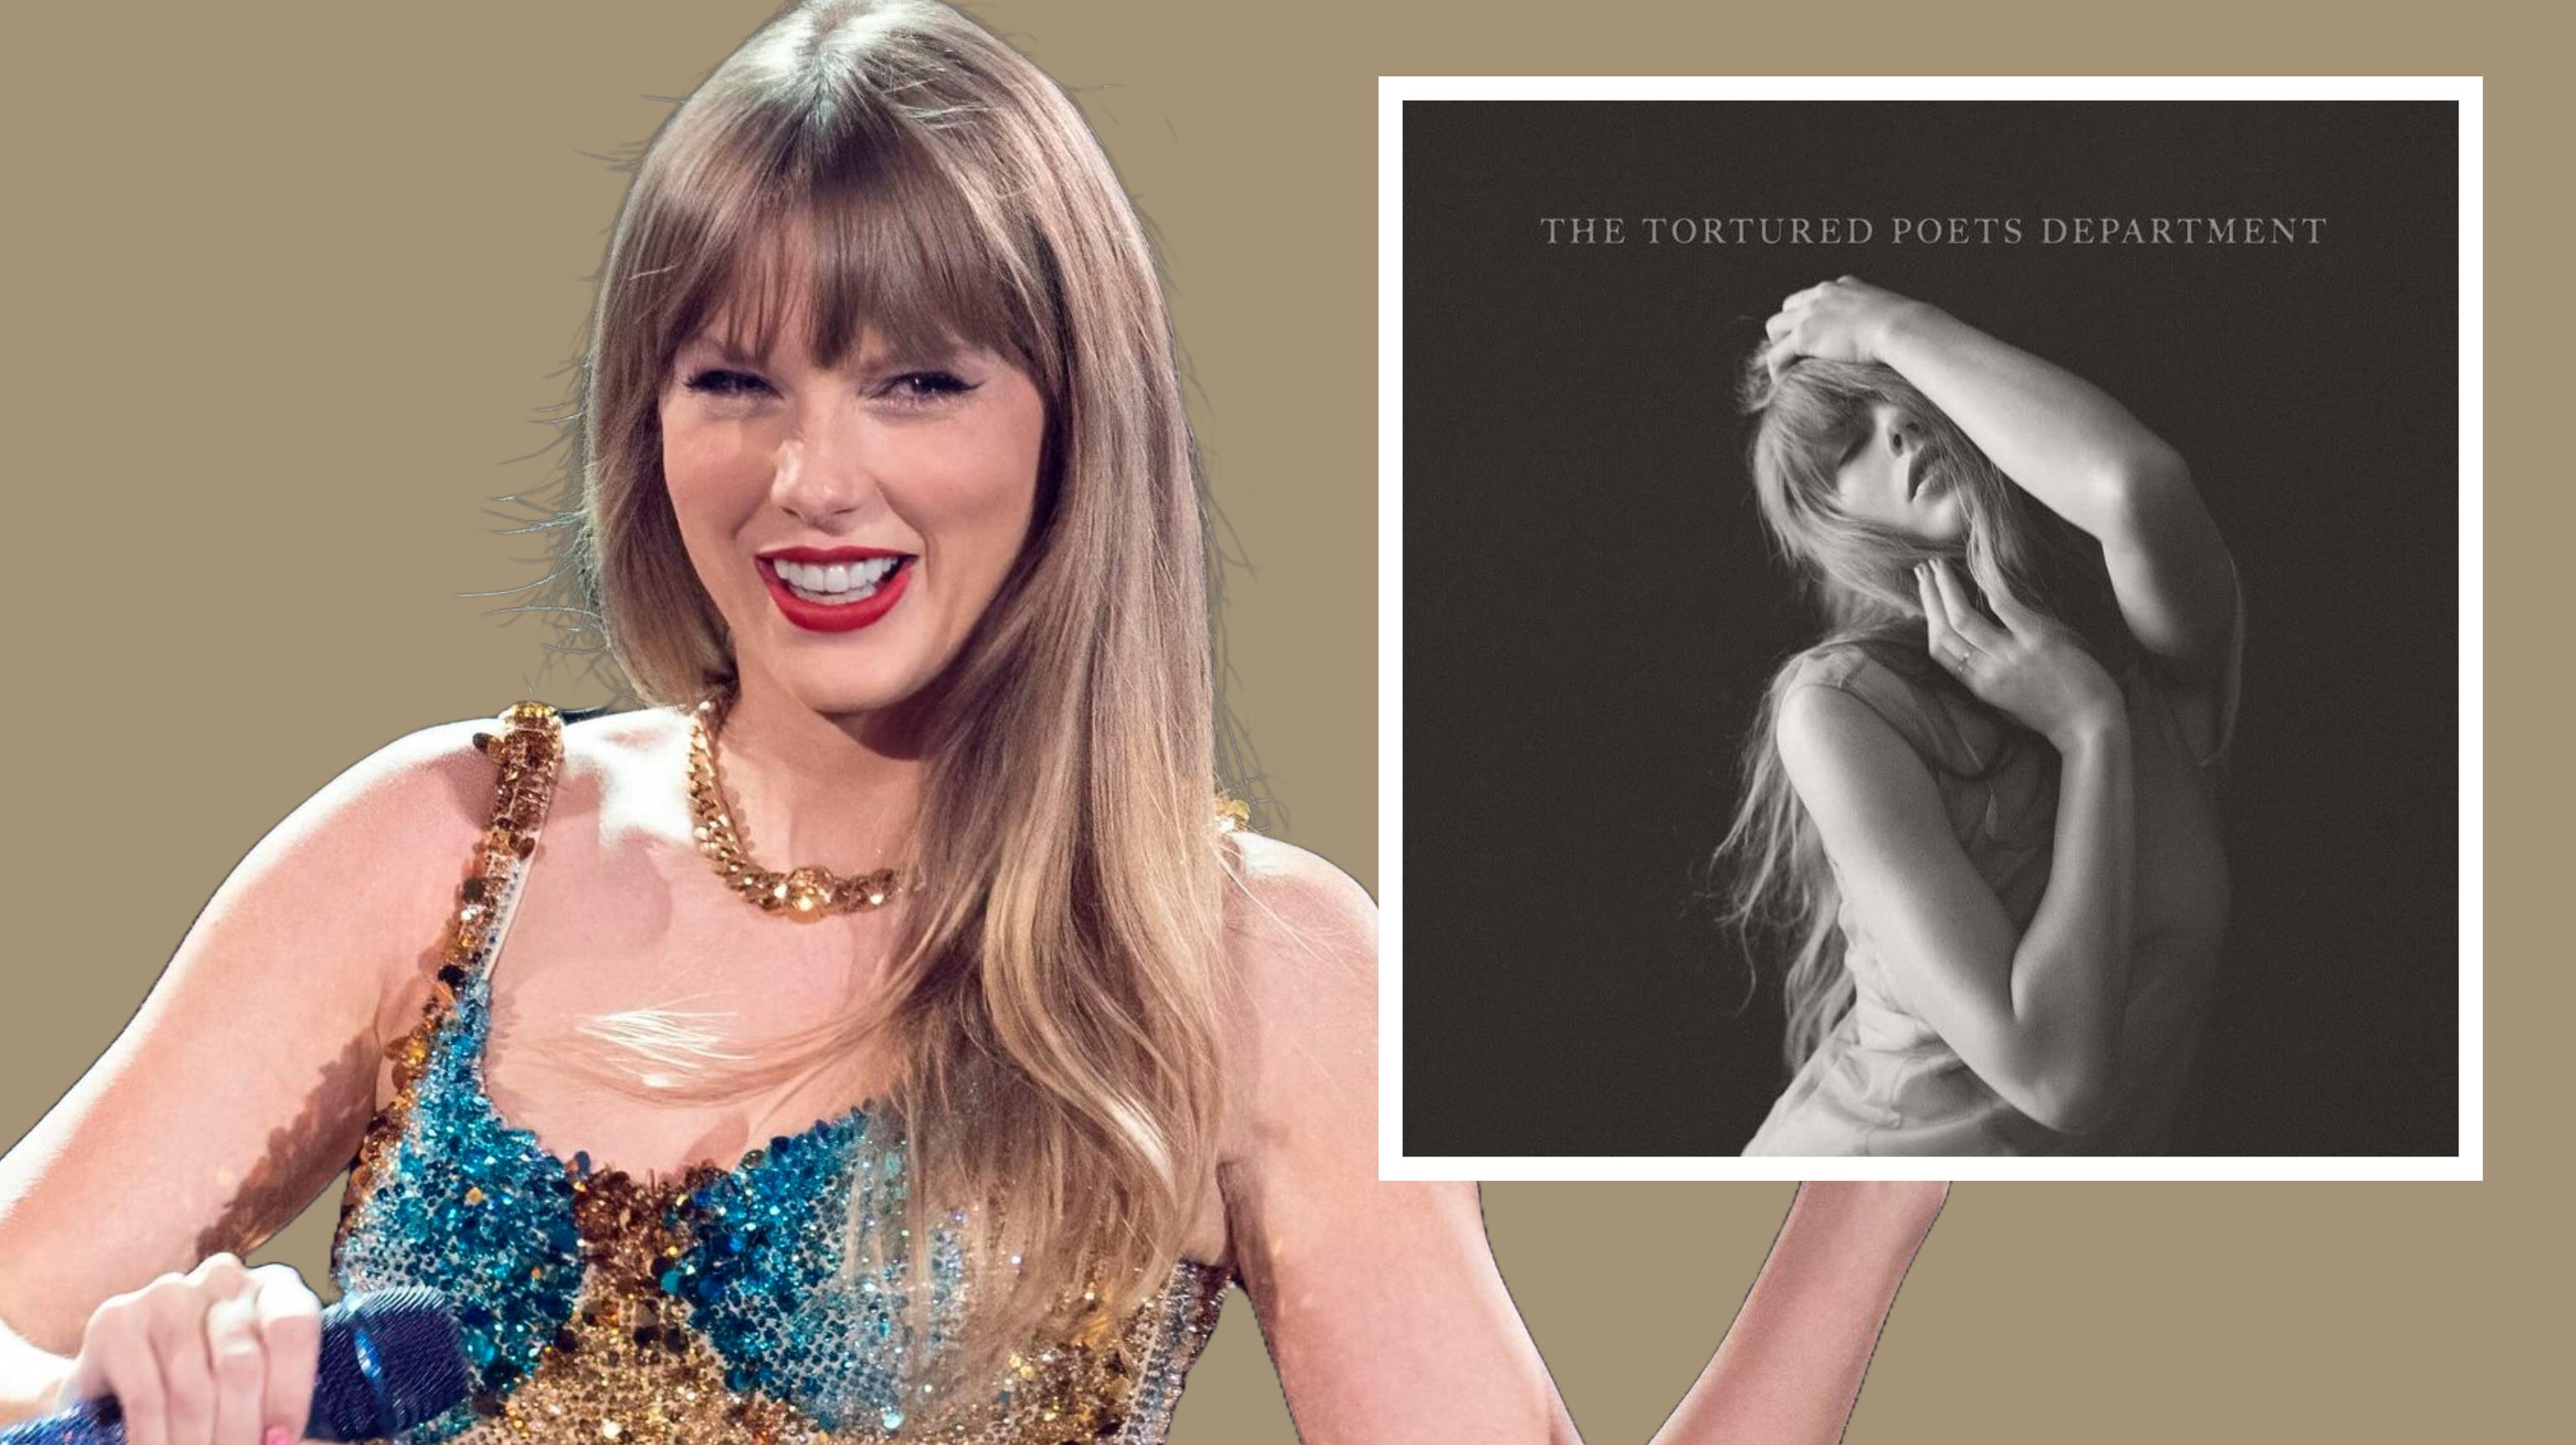 Anmelderne er vilde med Taylor Swifts nye album "The Tortured Poets Department".